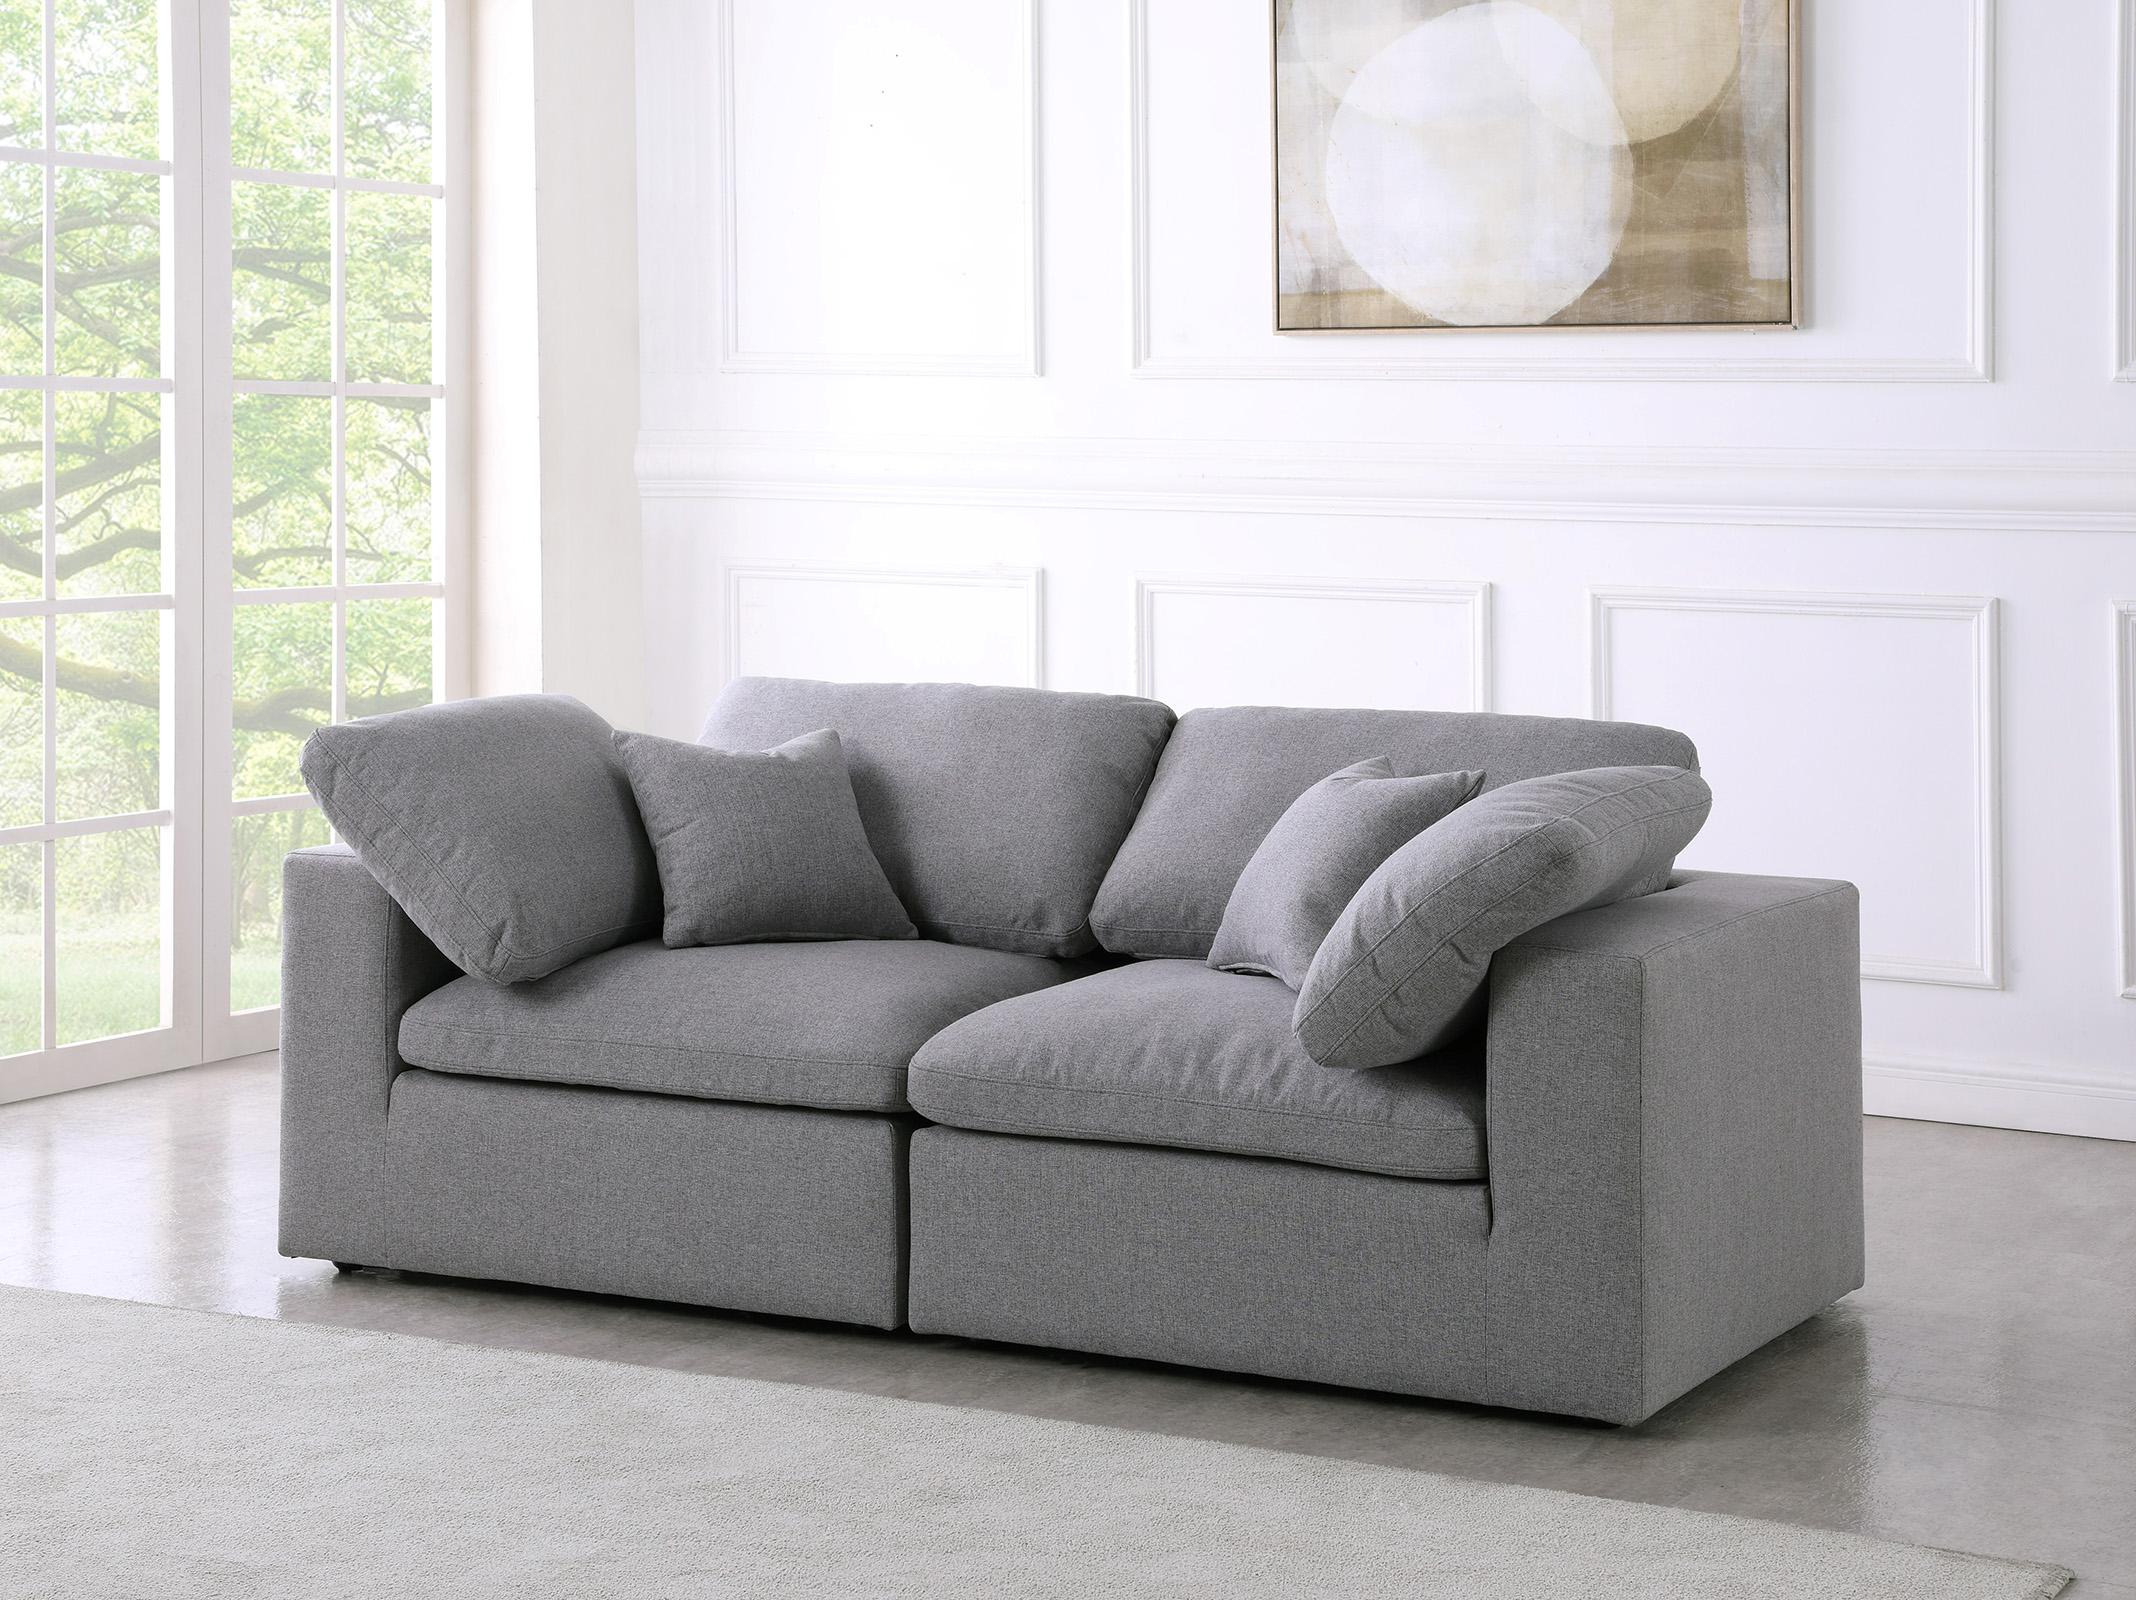 

    
Serene Grey Linen Textured Fabric Deluxe Comfort Modular Sofa S80 Meridian
